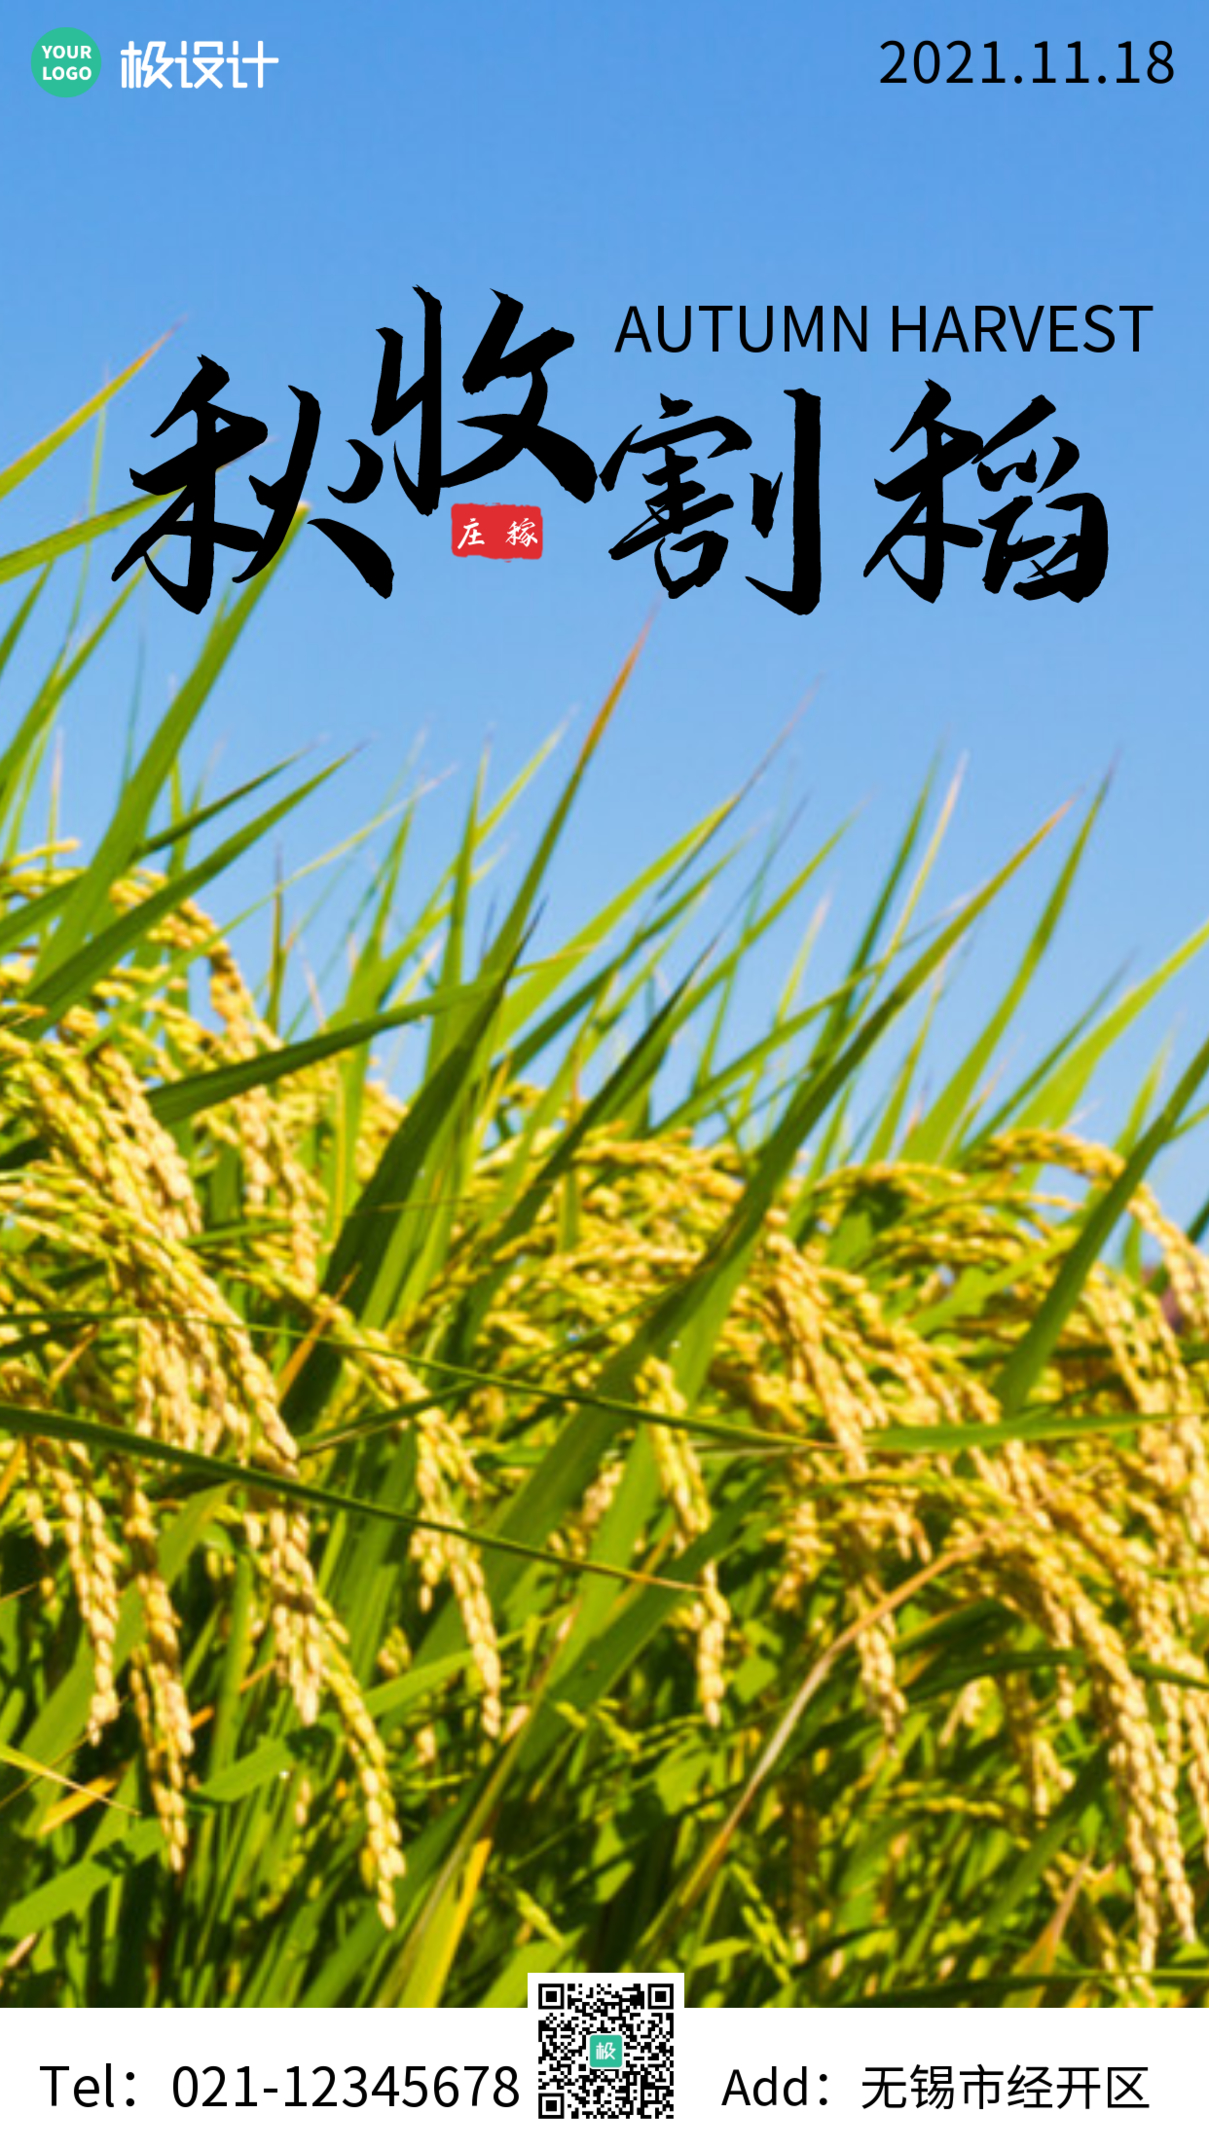 秋收割稻摄影图简约大气宣传海报